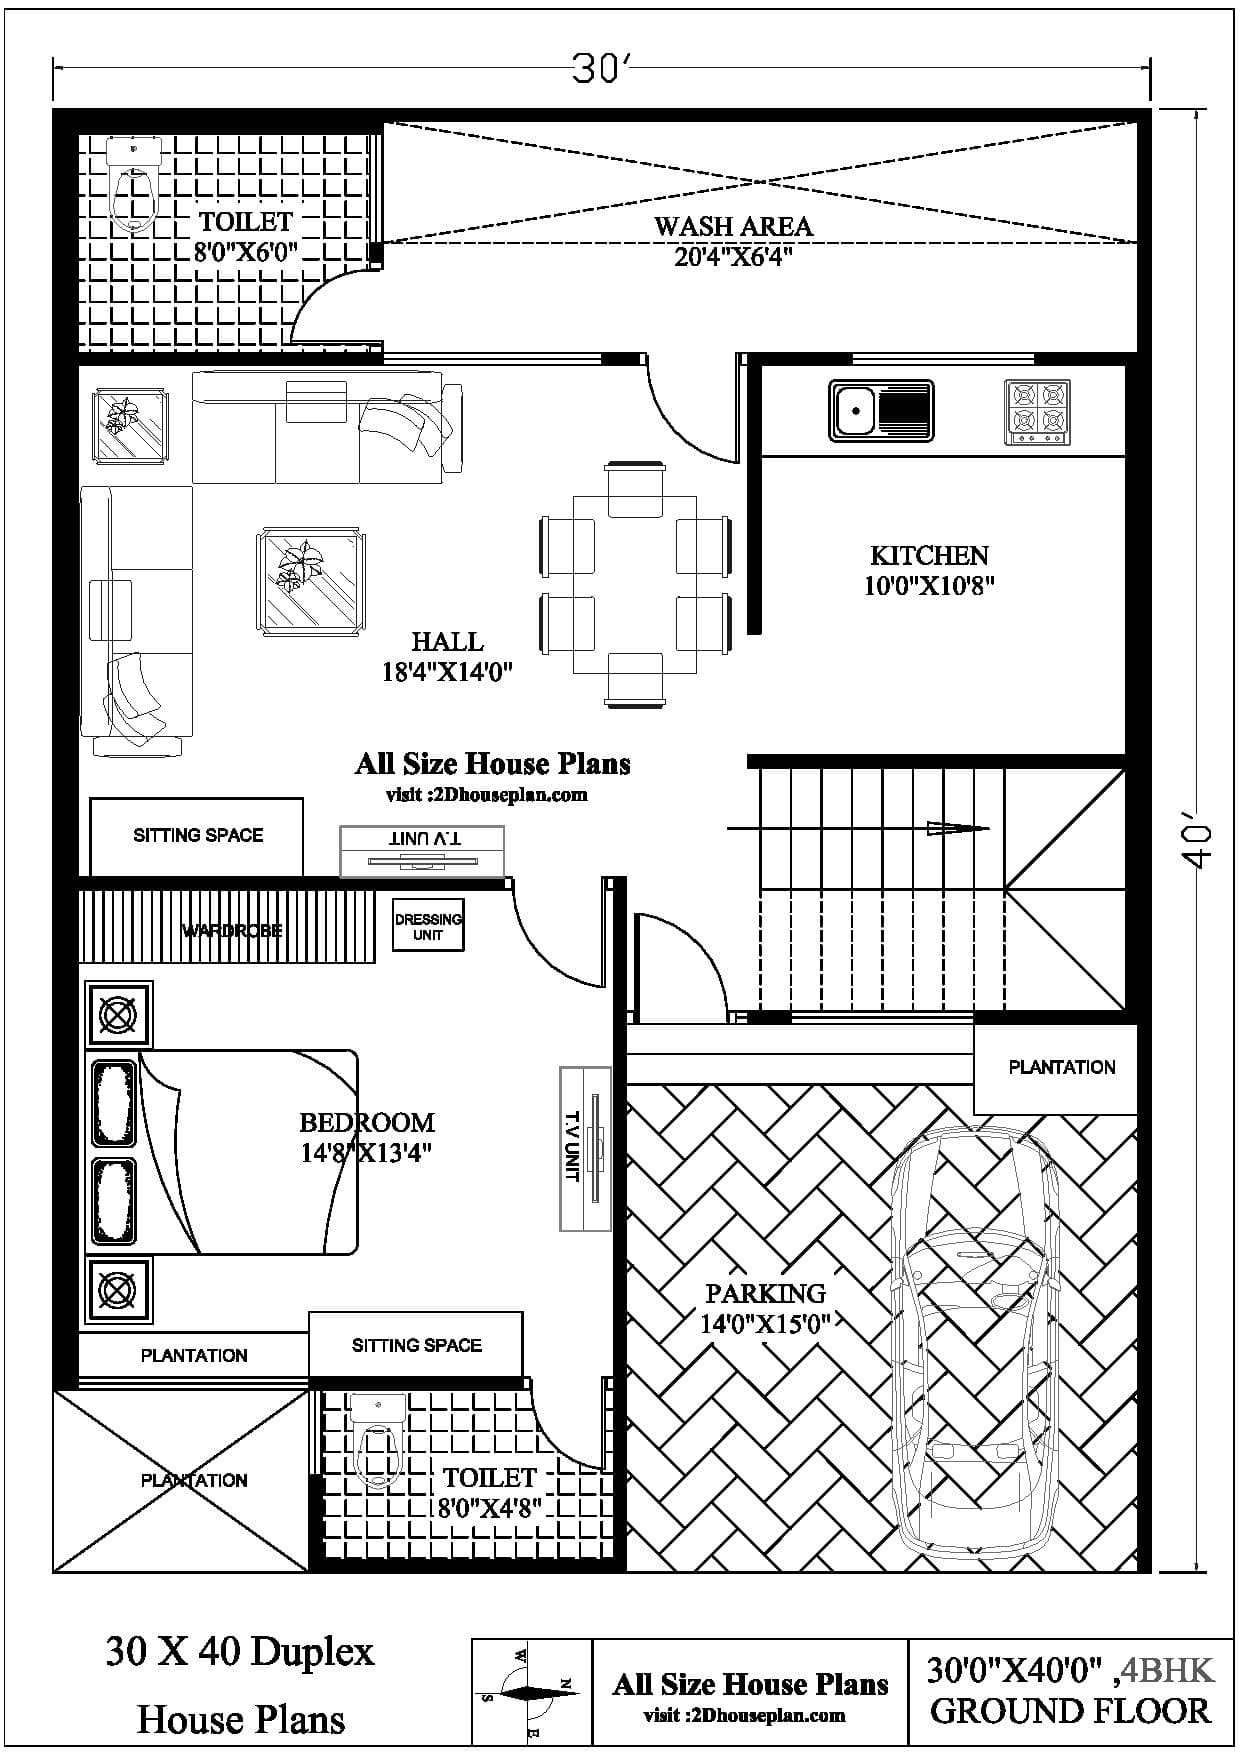 30x40 Duplex House Plans